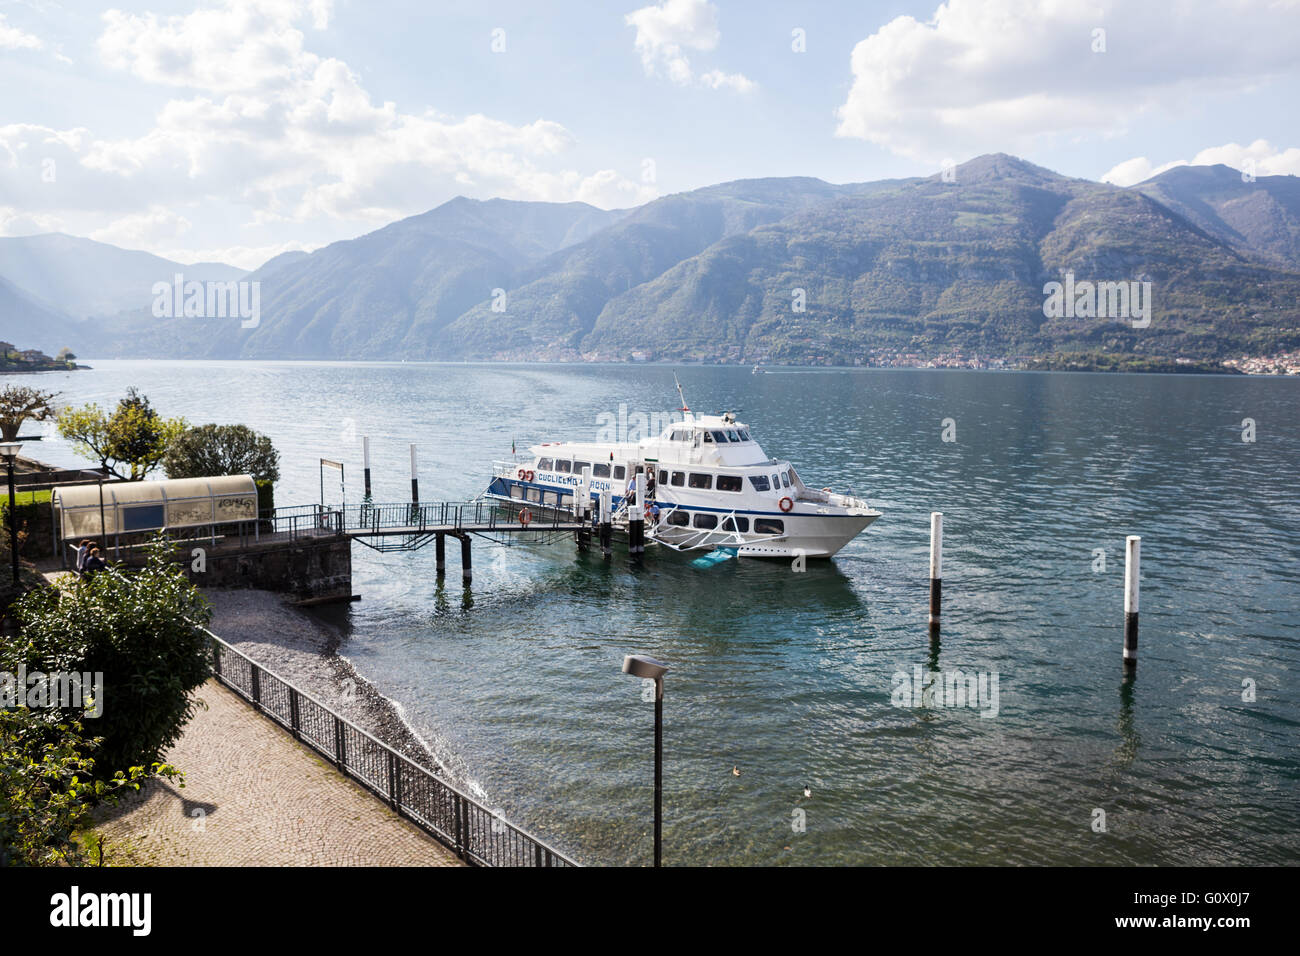 Station de ferry, le lac de Côme. Lezzeno, Italie. Banque D'Images